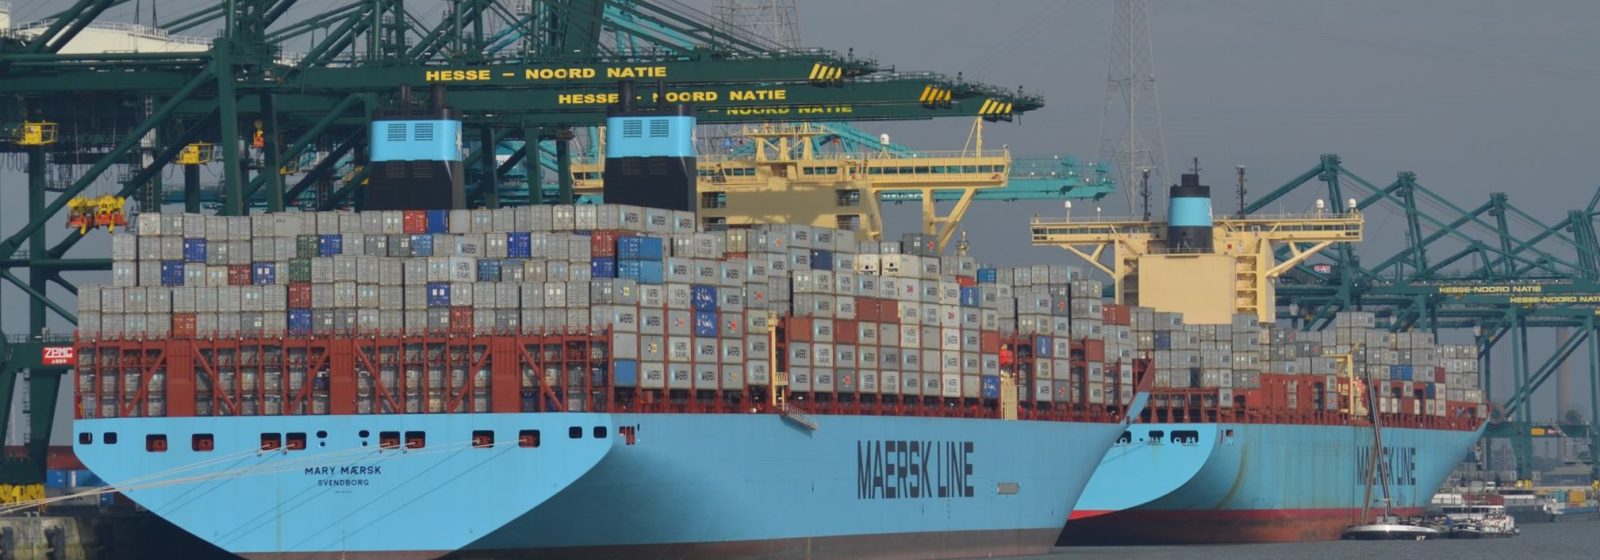 Recordaanloop van de 'Mary Maersk' in oktober 2013 in Antwerpen